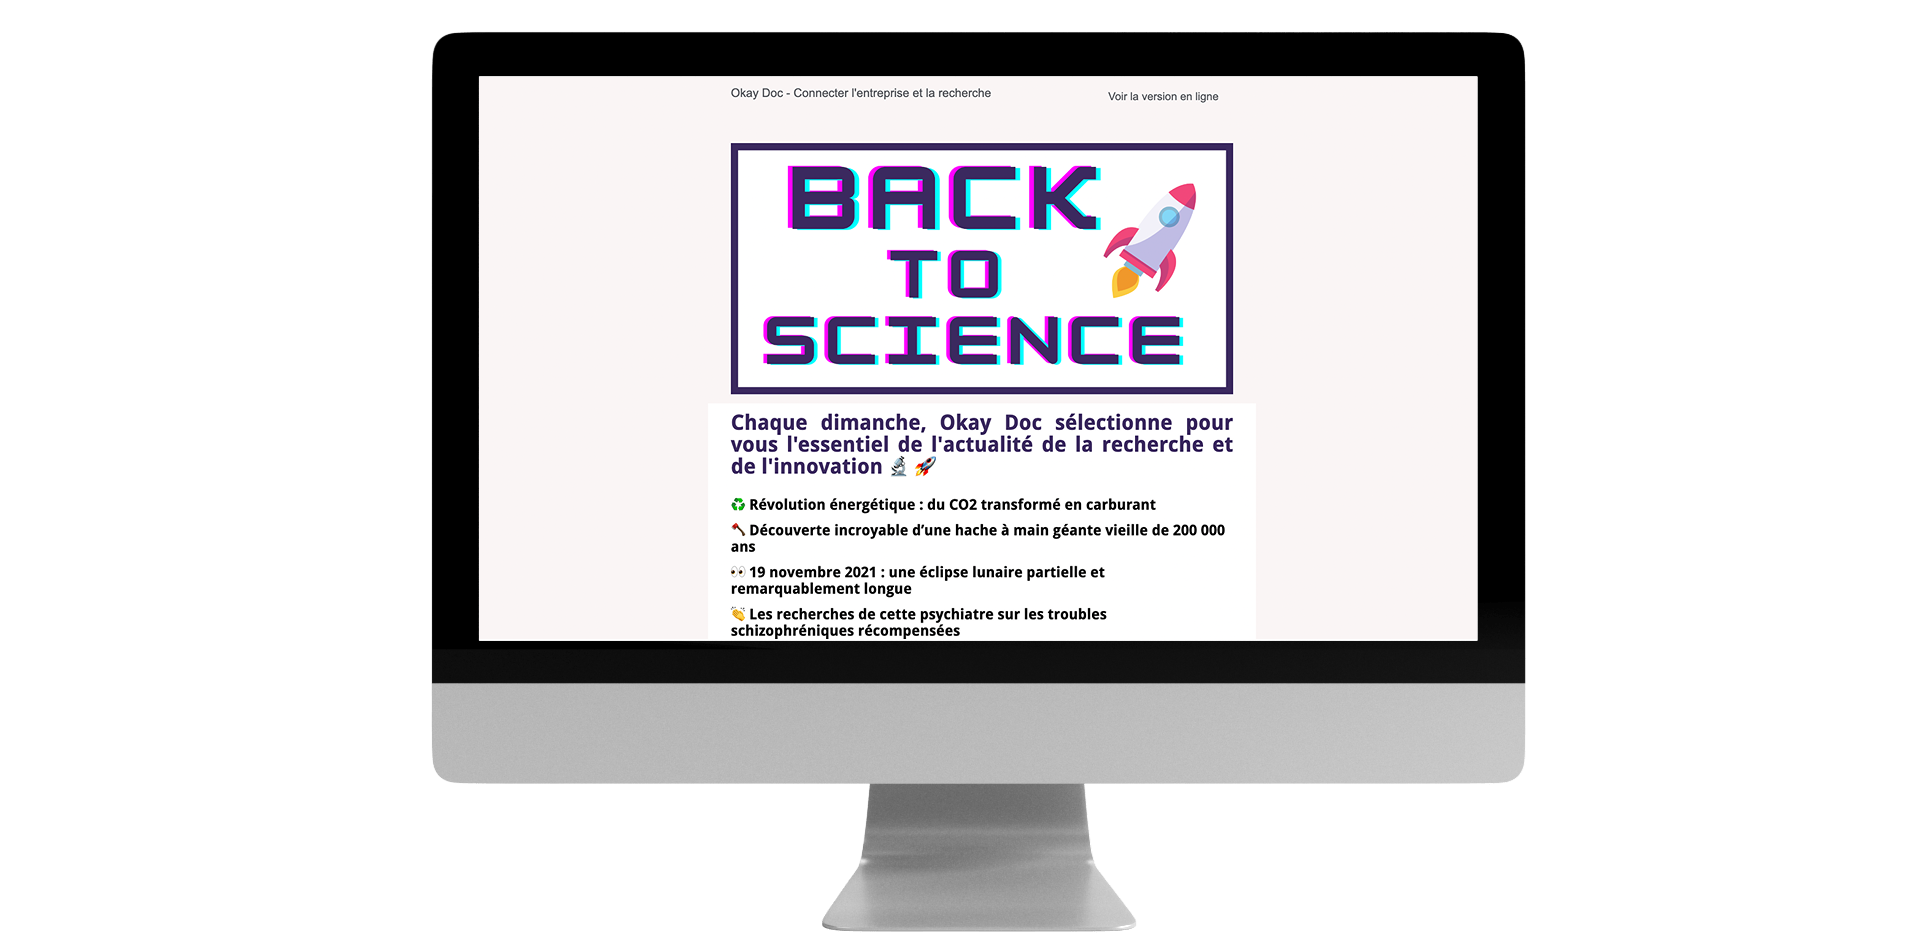 S'abonner aux newsletters de Okay Doc et Back To Science